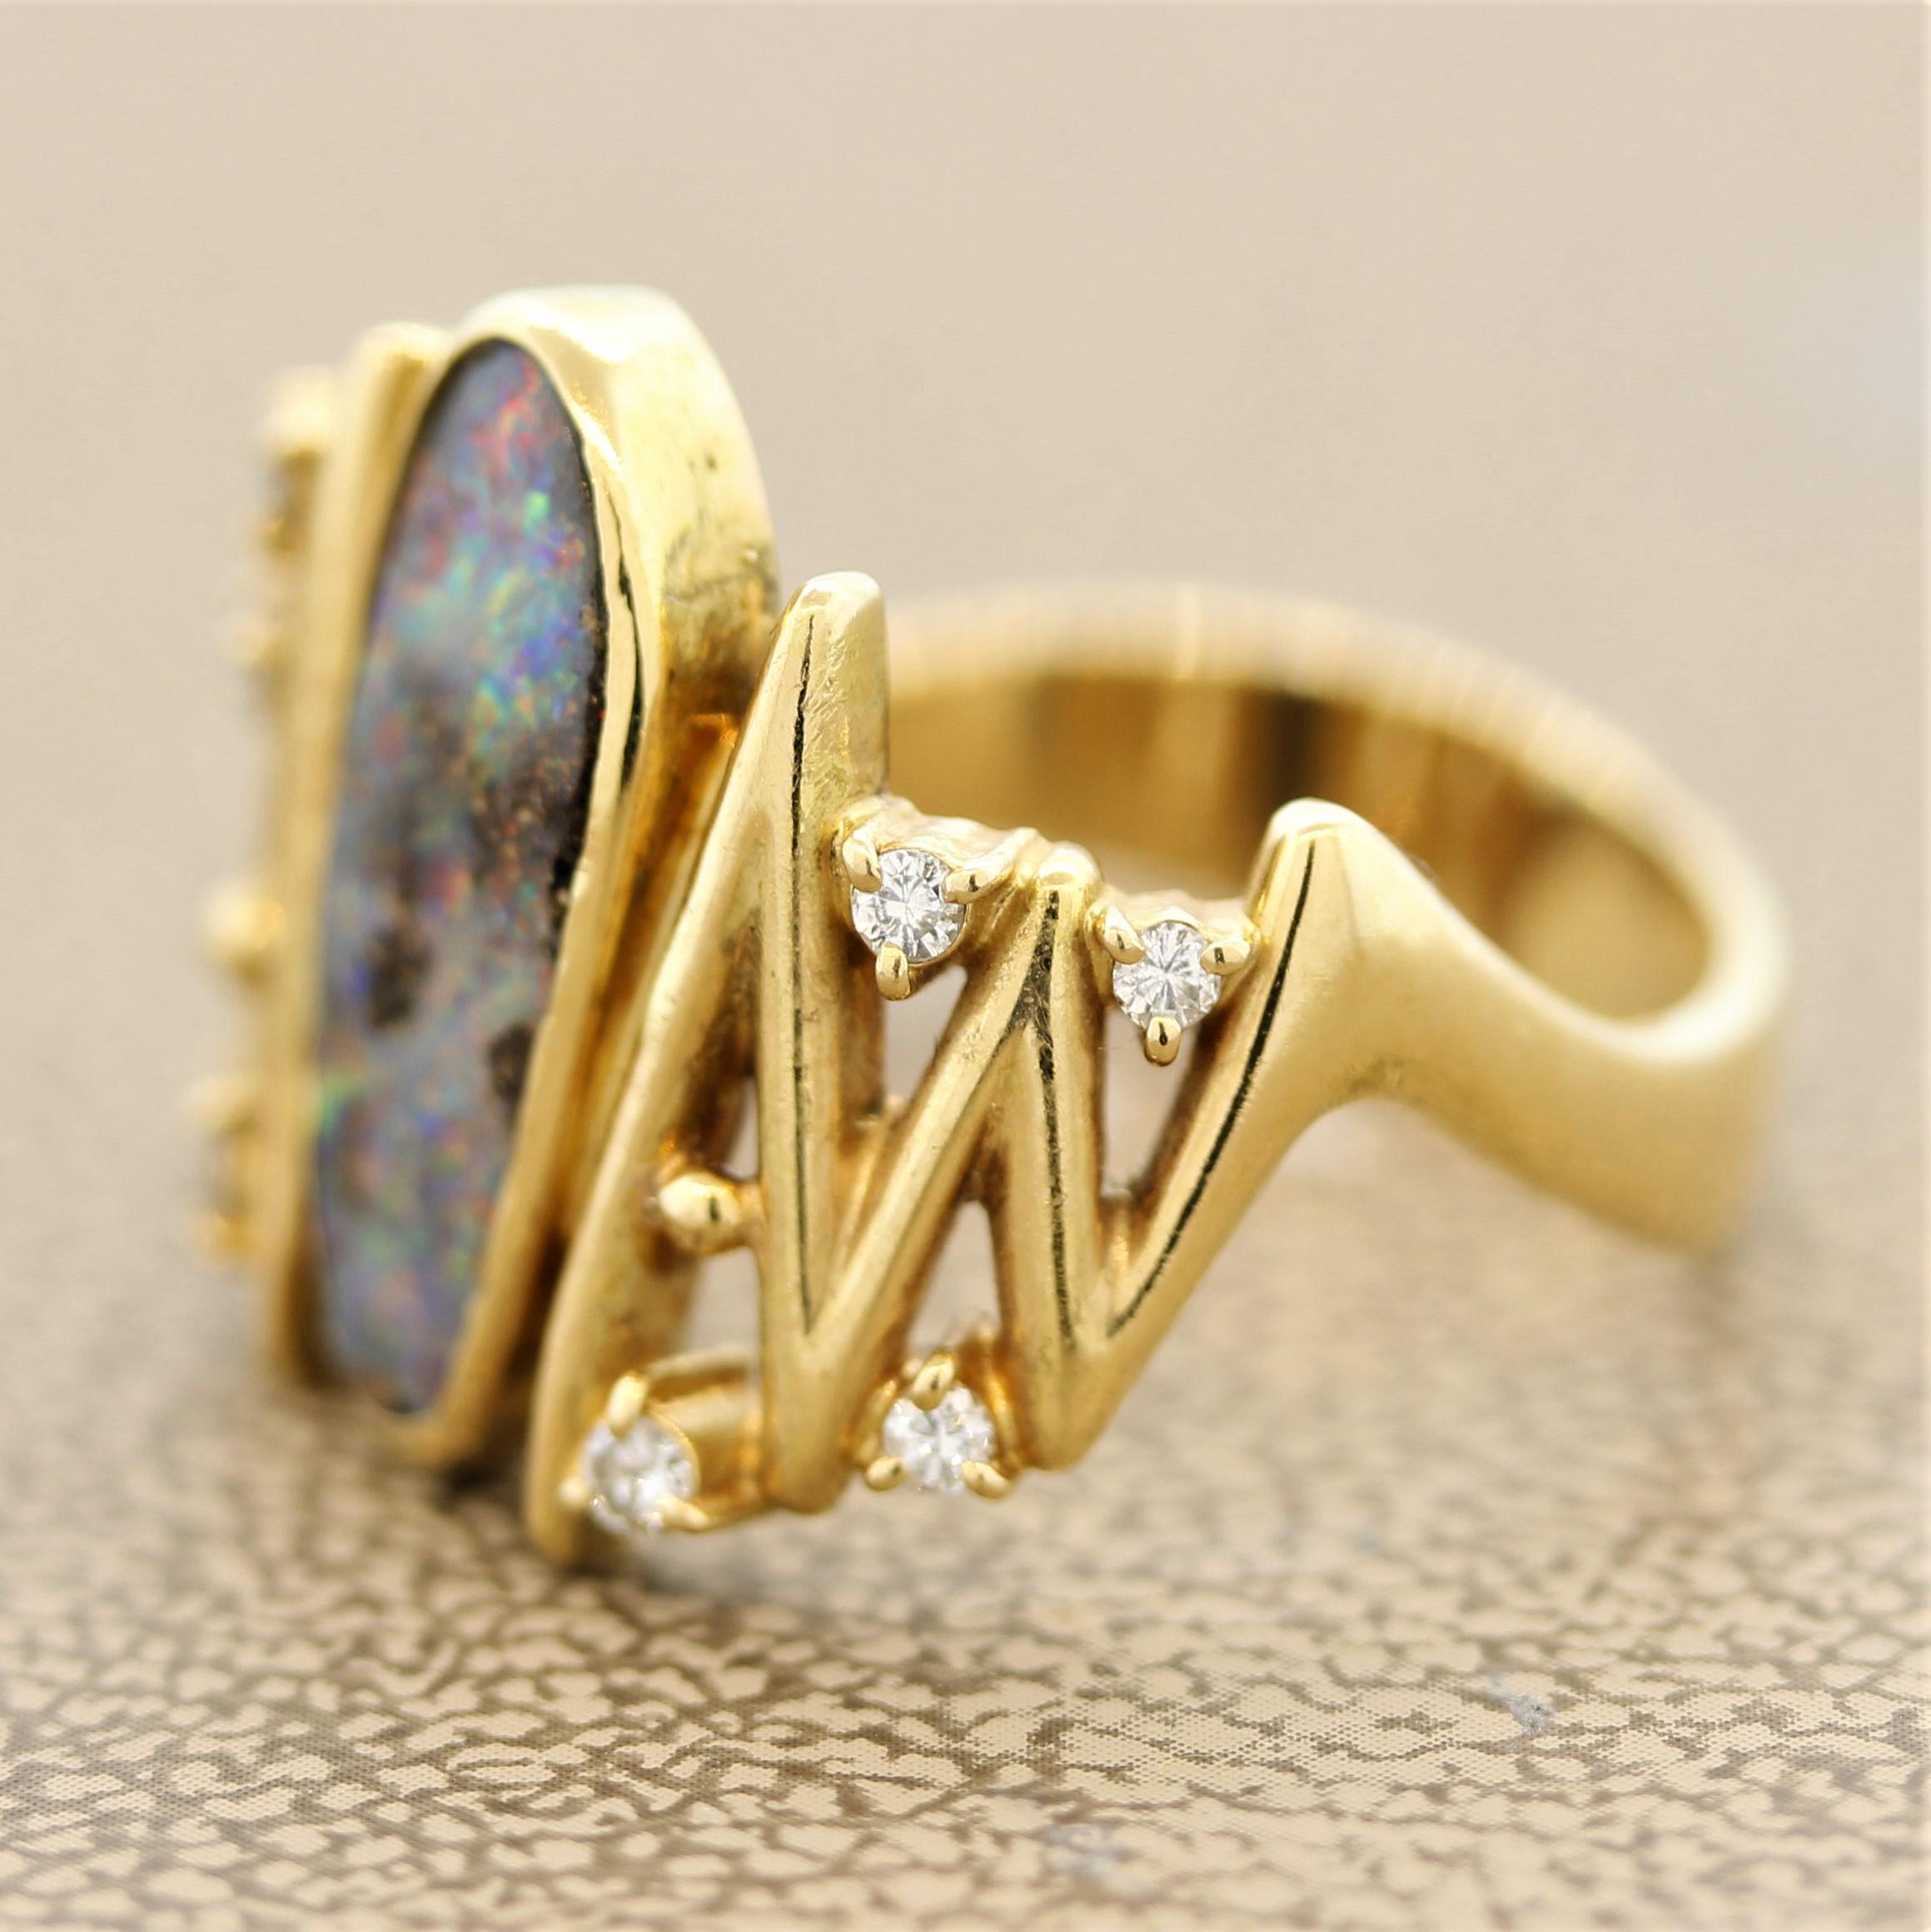 Mixed Cut Modern Australian Boulder Opal Diamond Gold Ring